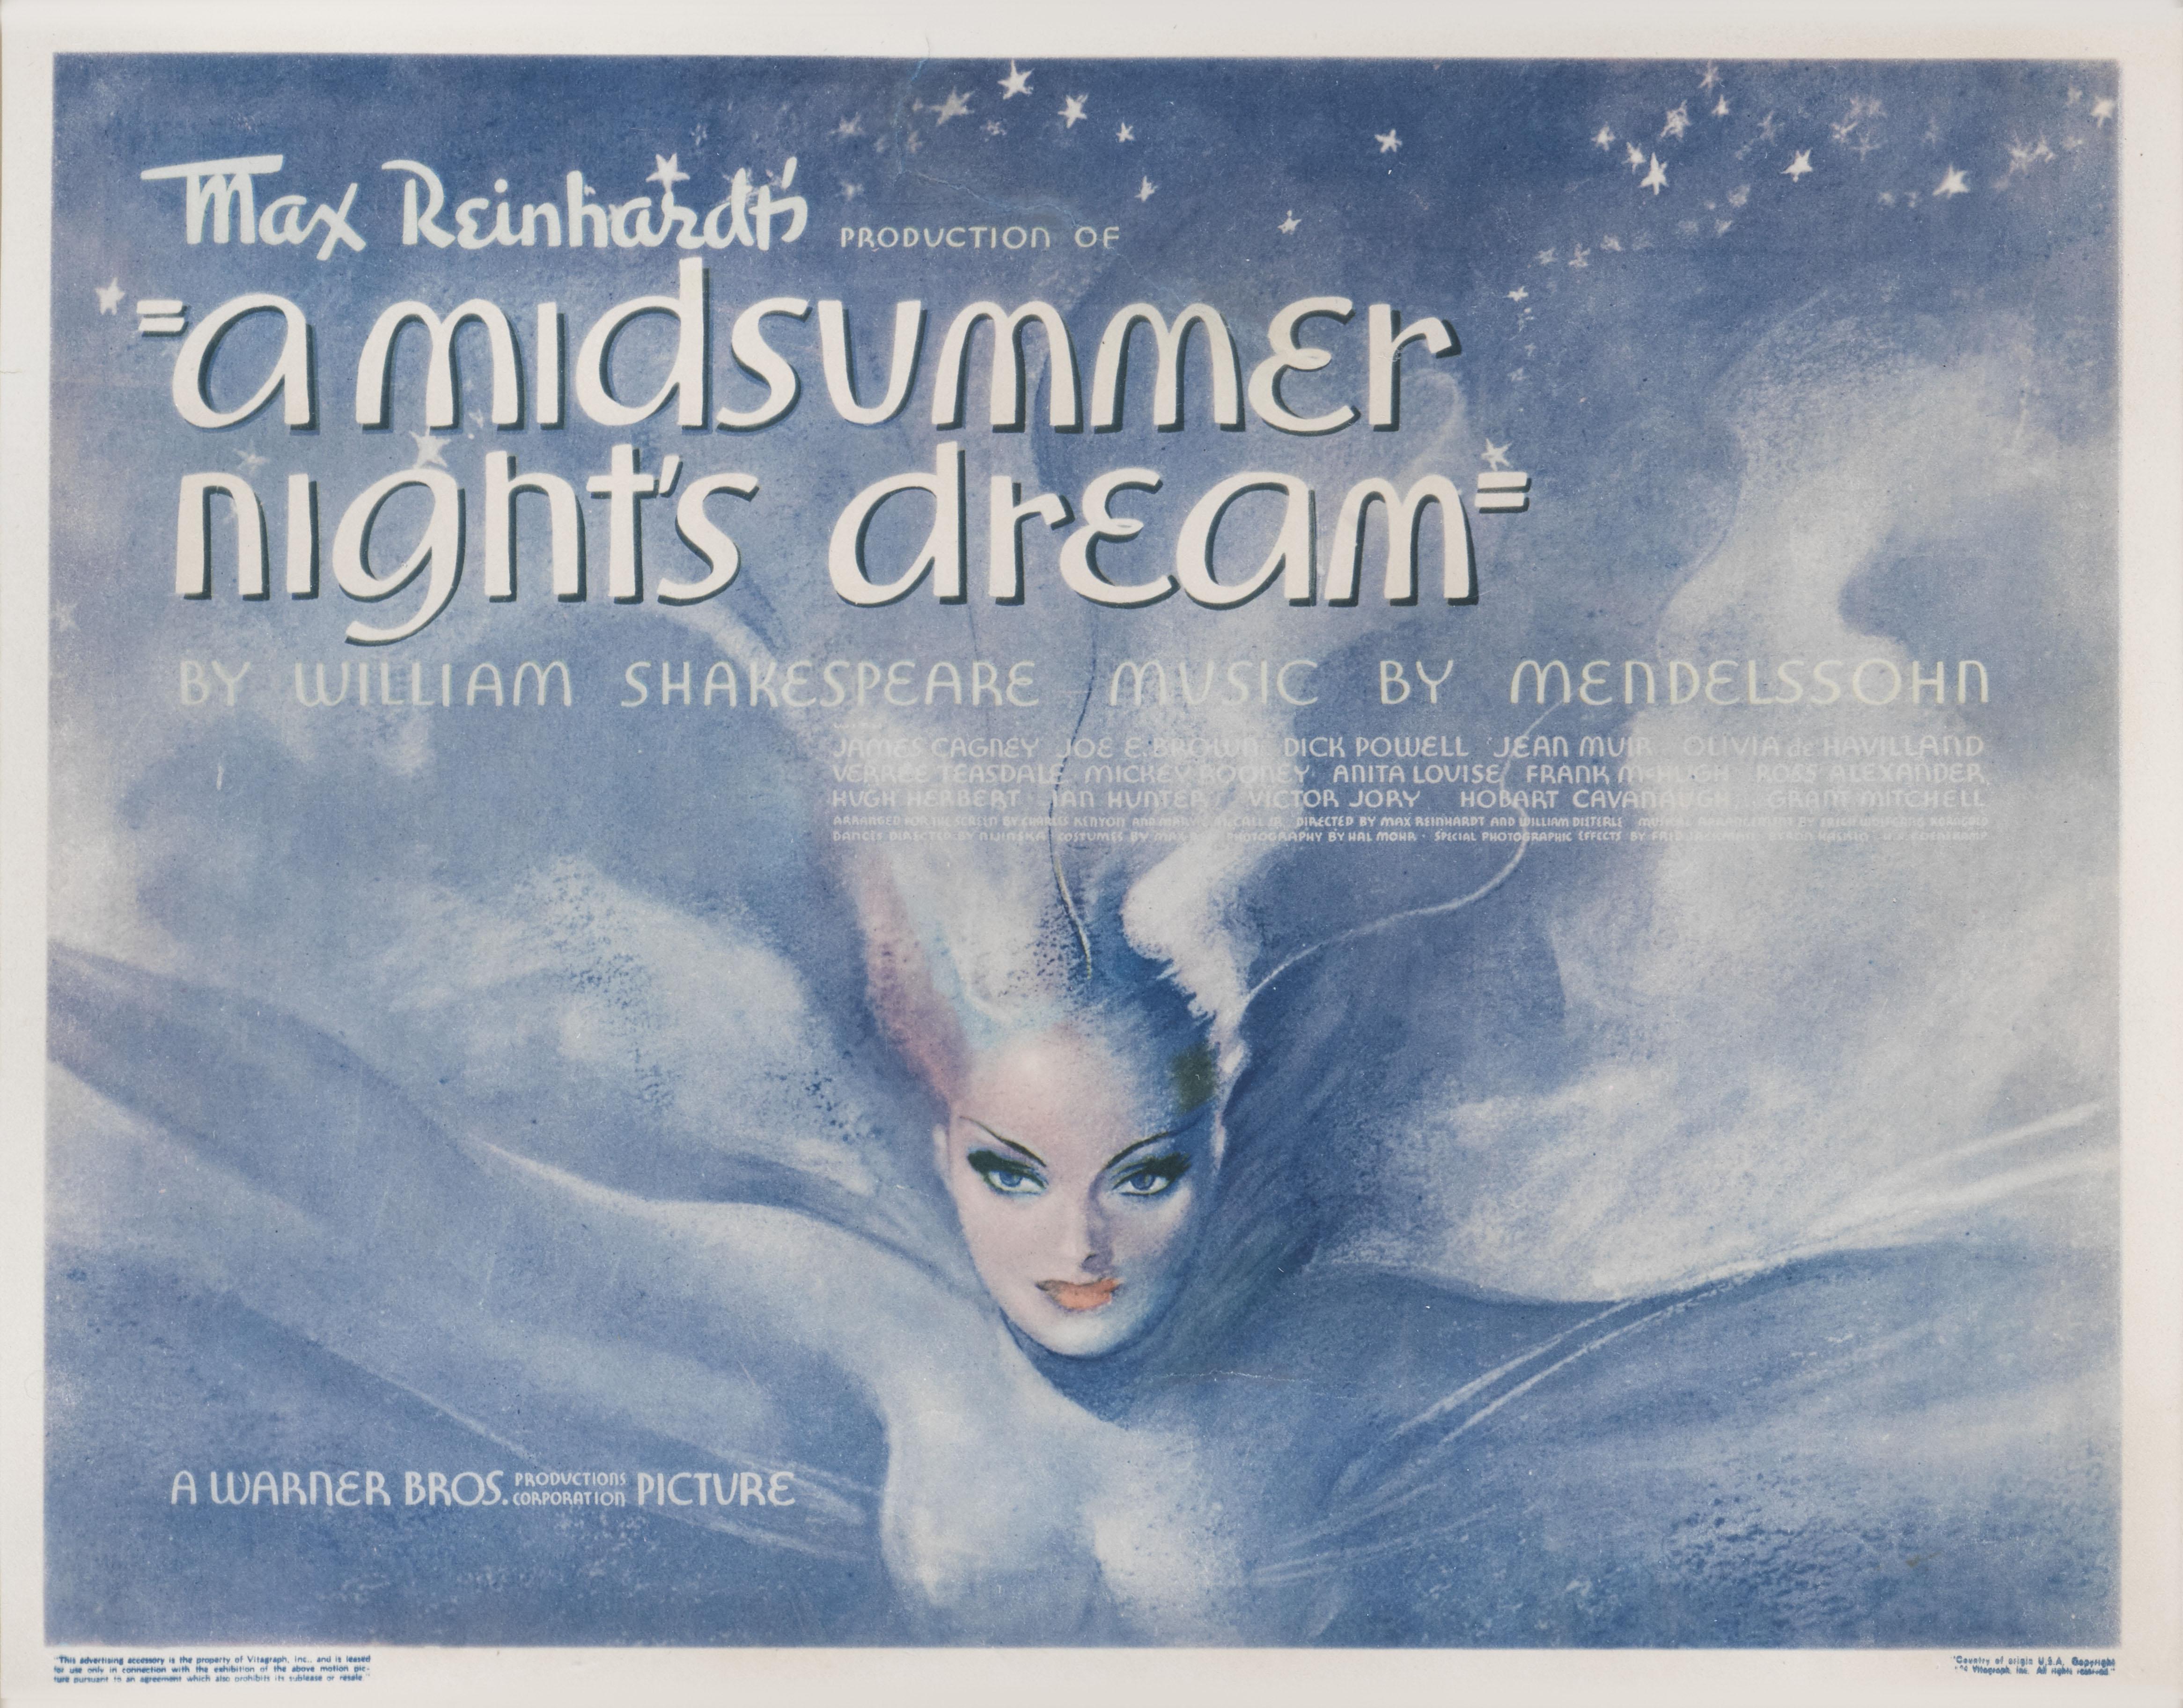 Dies ist eine äußerst seltene und schöne Original-US-Titelkarte  für den Fantasy-Film A Midsummer Night's Dream von 1935.
In diesem Film spielten James Cagney, Dick Powell und Olivia de Havilland die Hauptrollen.
Das Werk ist mit UV-Plexiglas in